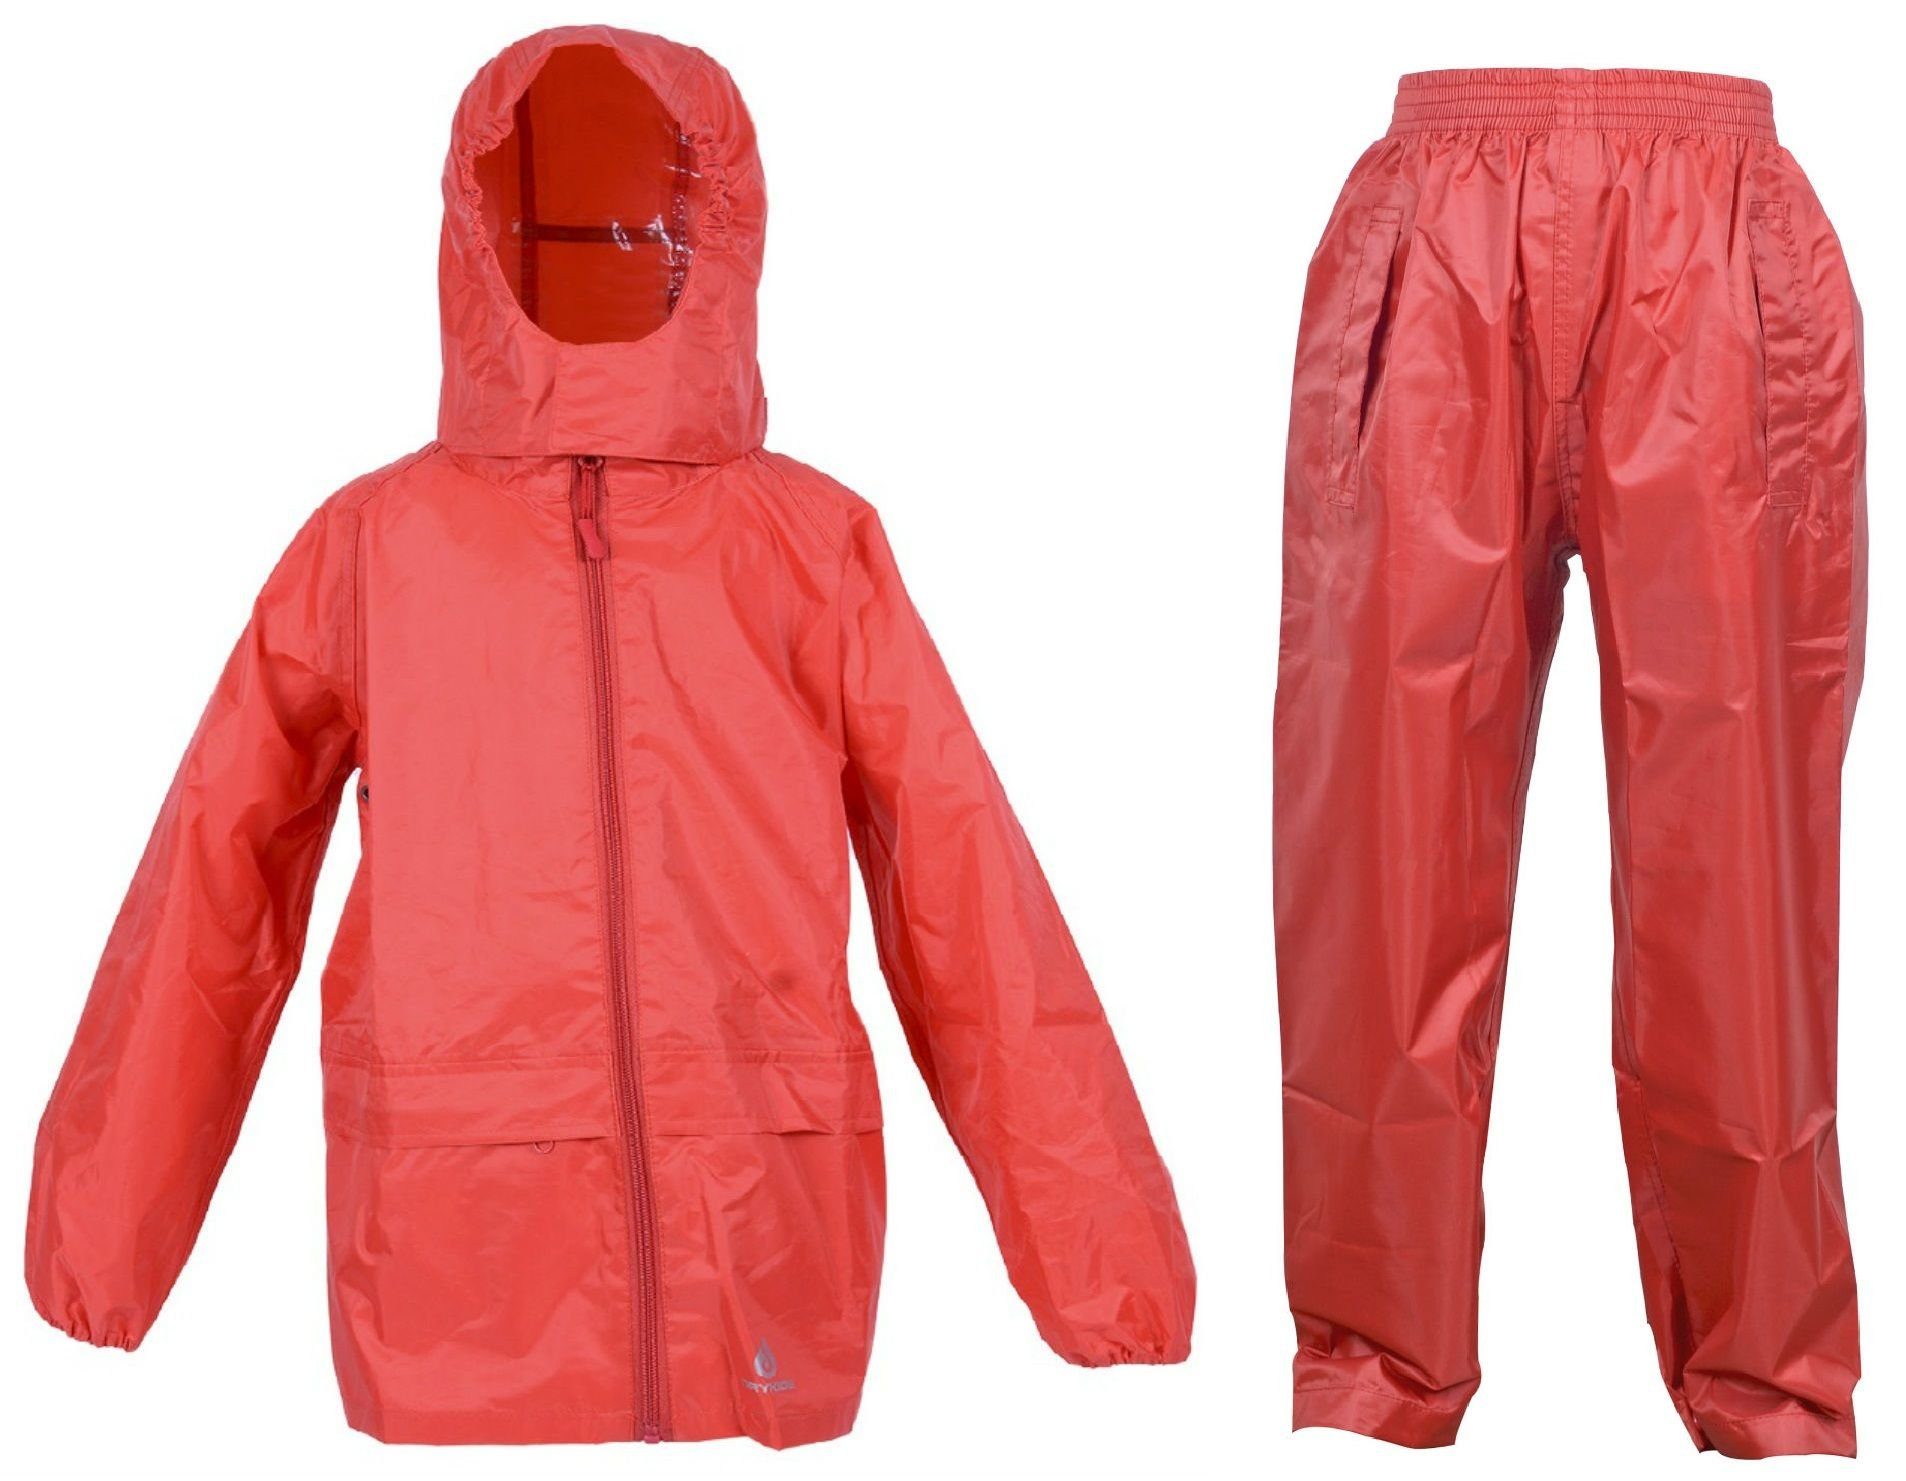 Regenanzug-Set, Regenbekleidung Wasserdichtes DRY Regenanzug (1-tlg), KIDS reflektierende Kinder